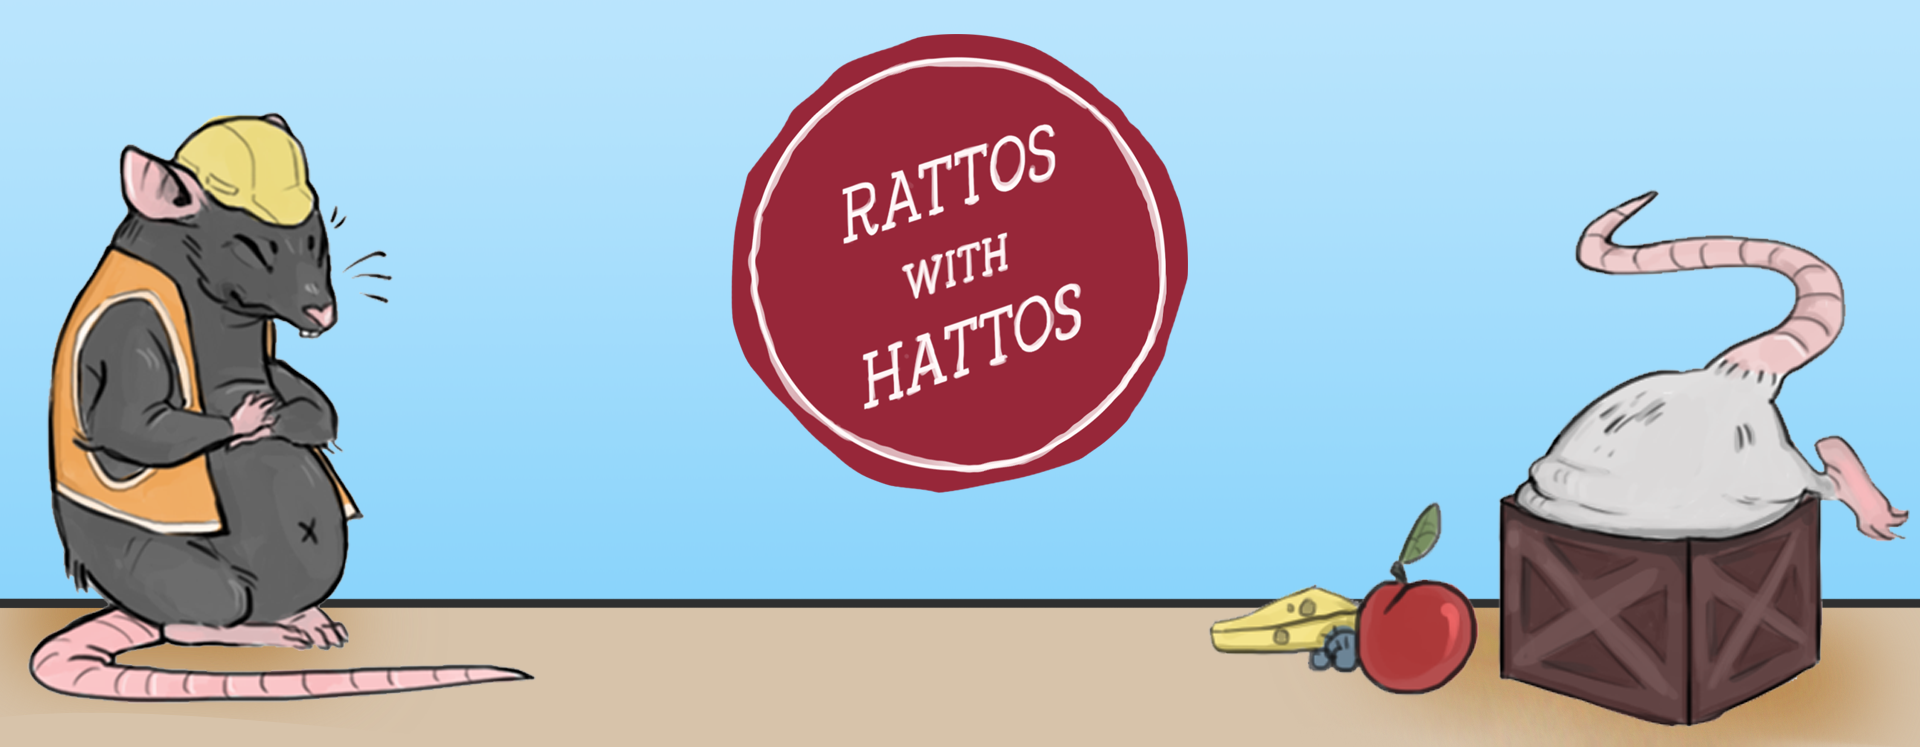 Rattos with Hattos